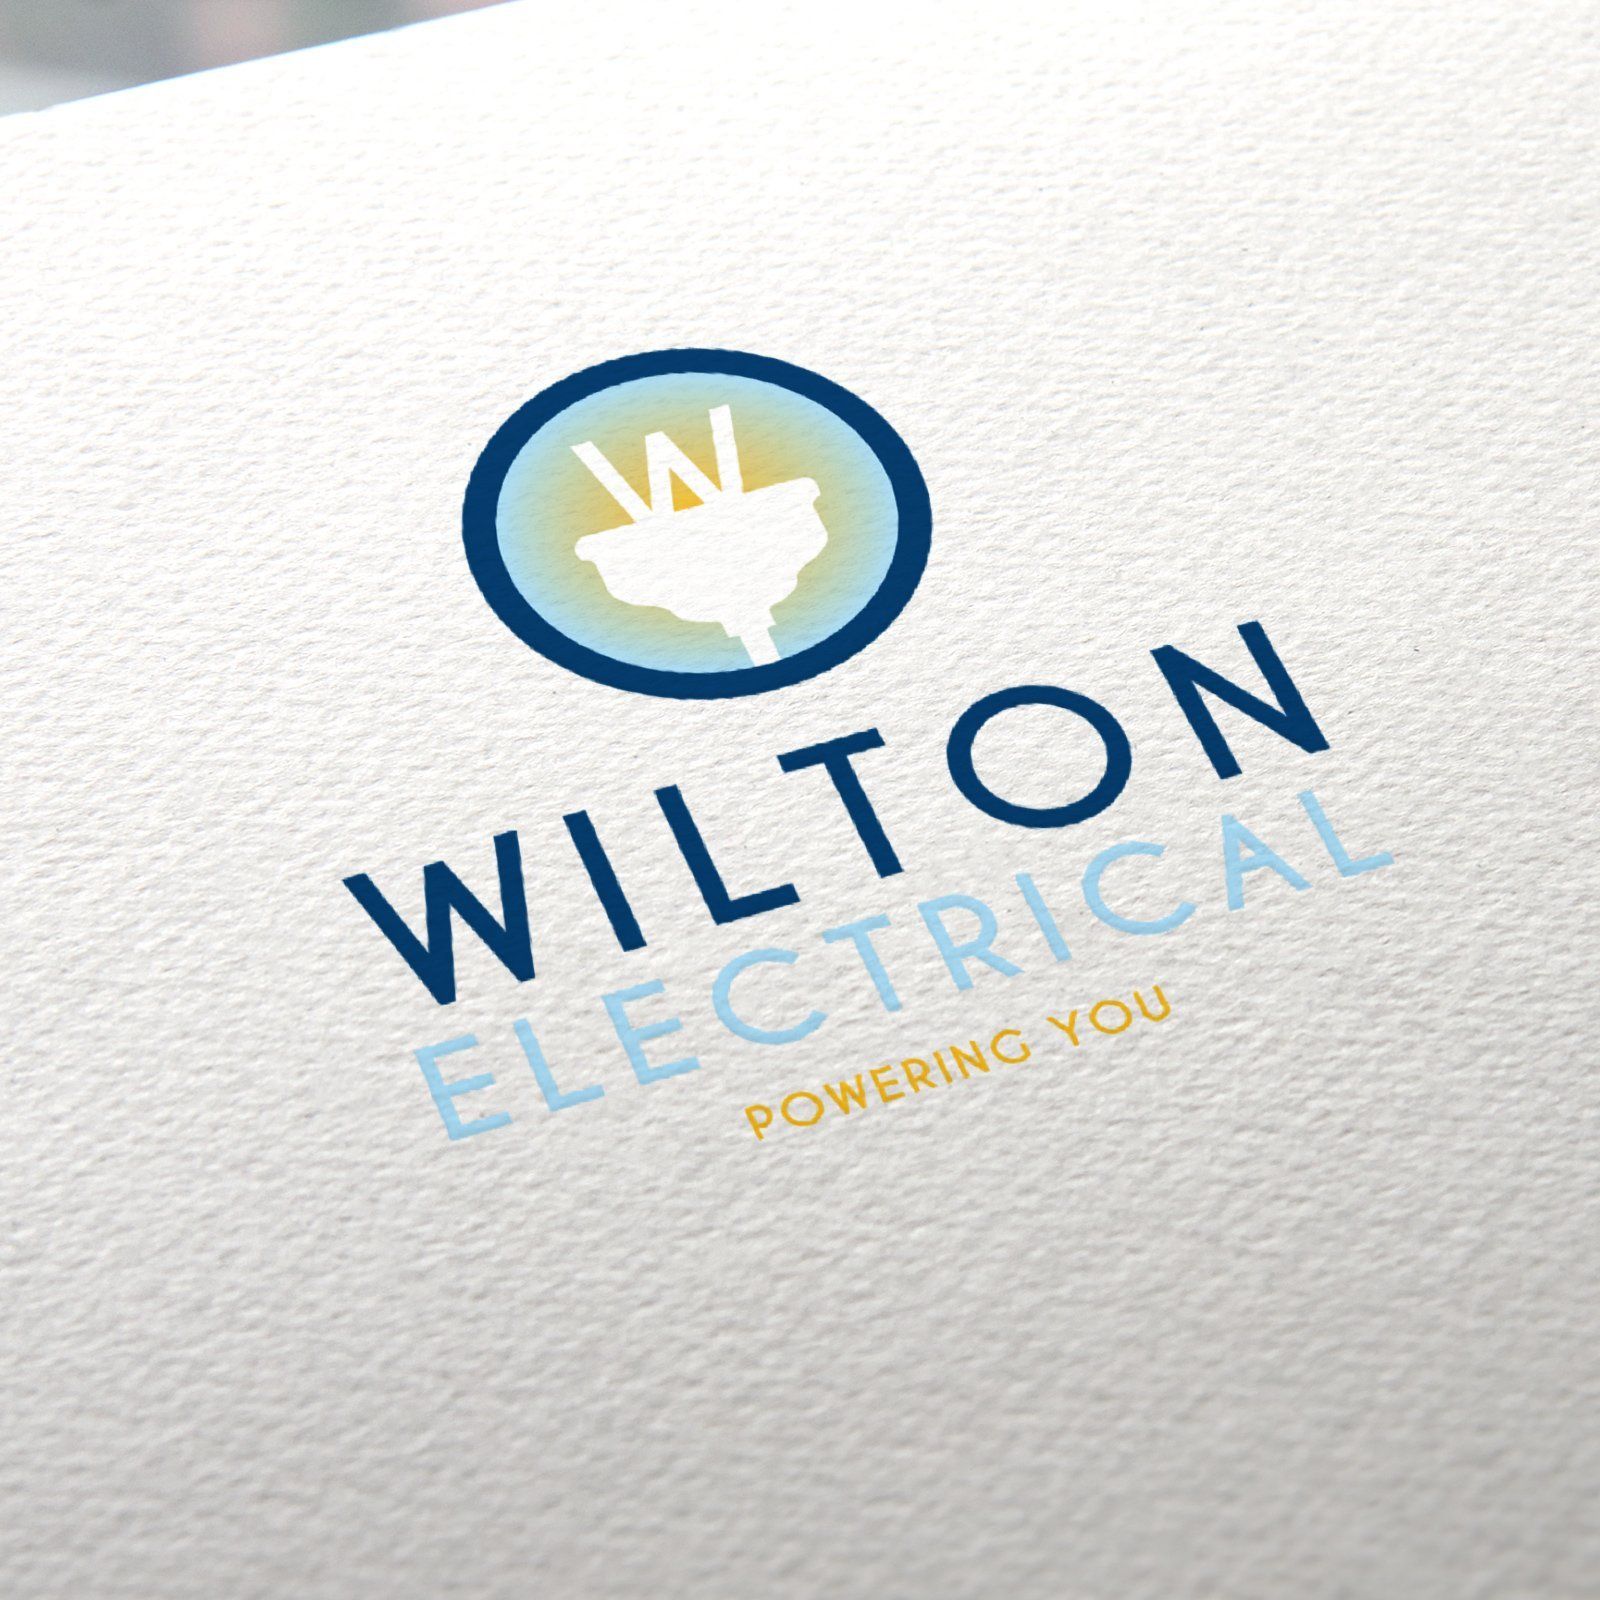 Wilton Electrical Logo Design